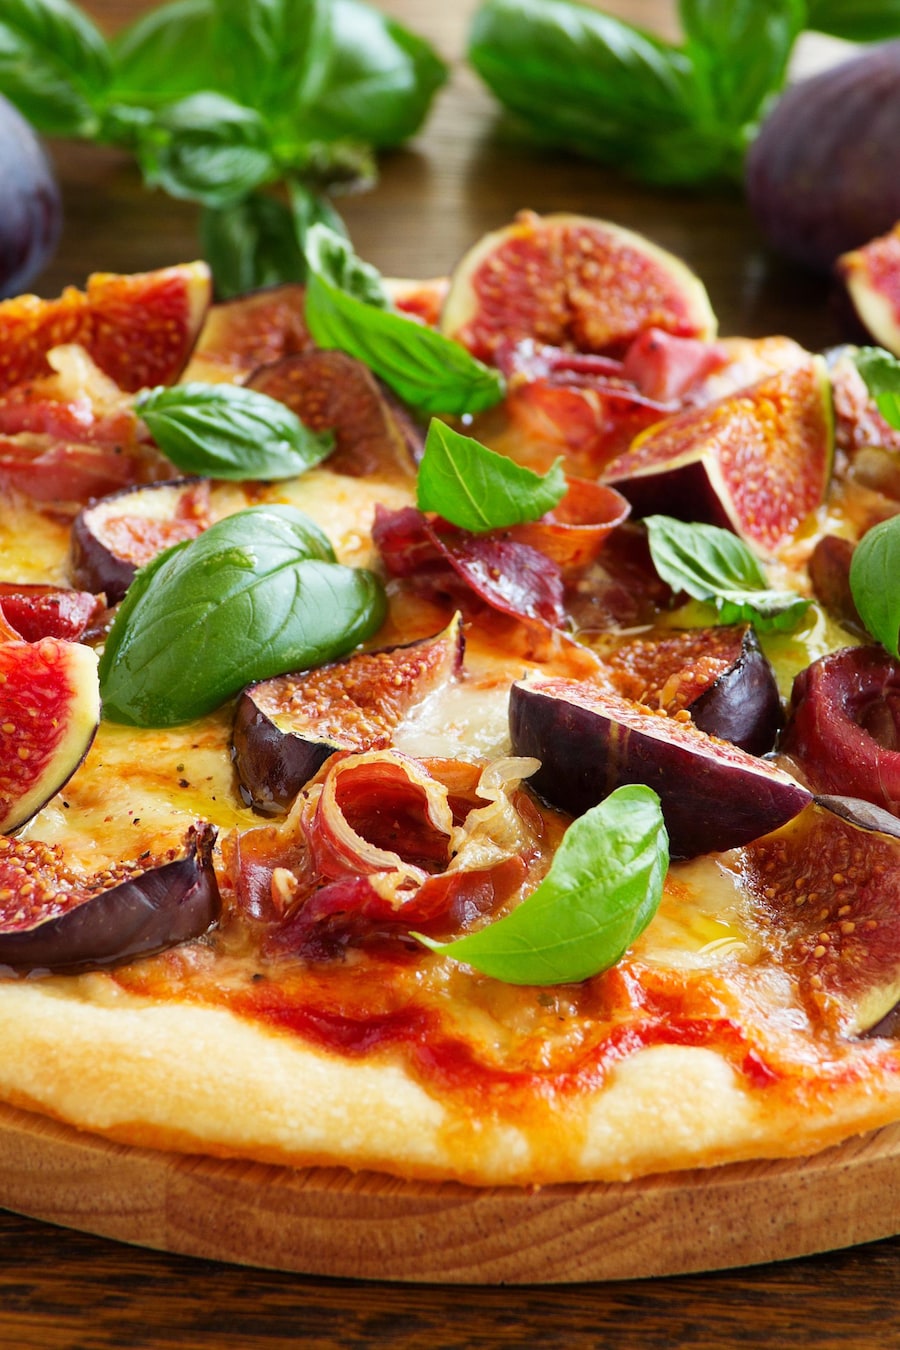 Une pizza recouverte de figues, de basilic, de fromage et de prosciutto.